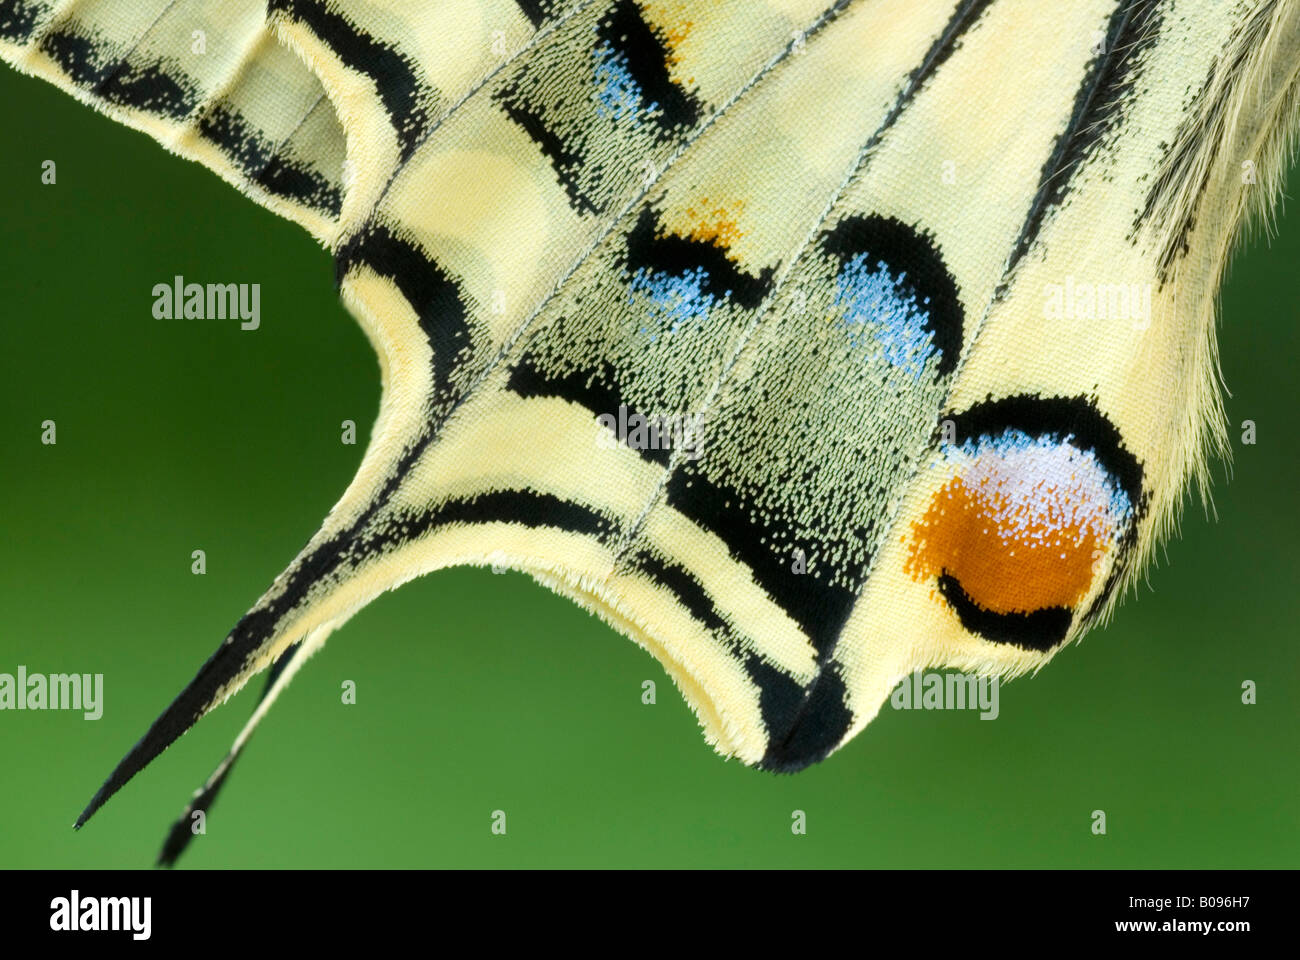 Détail de l'aile de l'Ancien Monde ou machaon machaon jaune commun (Papilio machaon), Schwaz, Tyrol, Autriche Banque D'Images